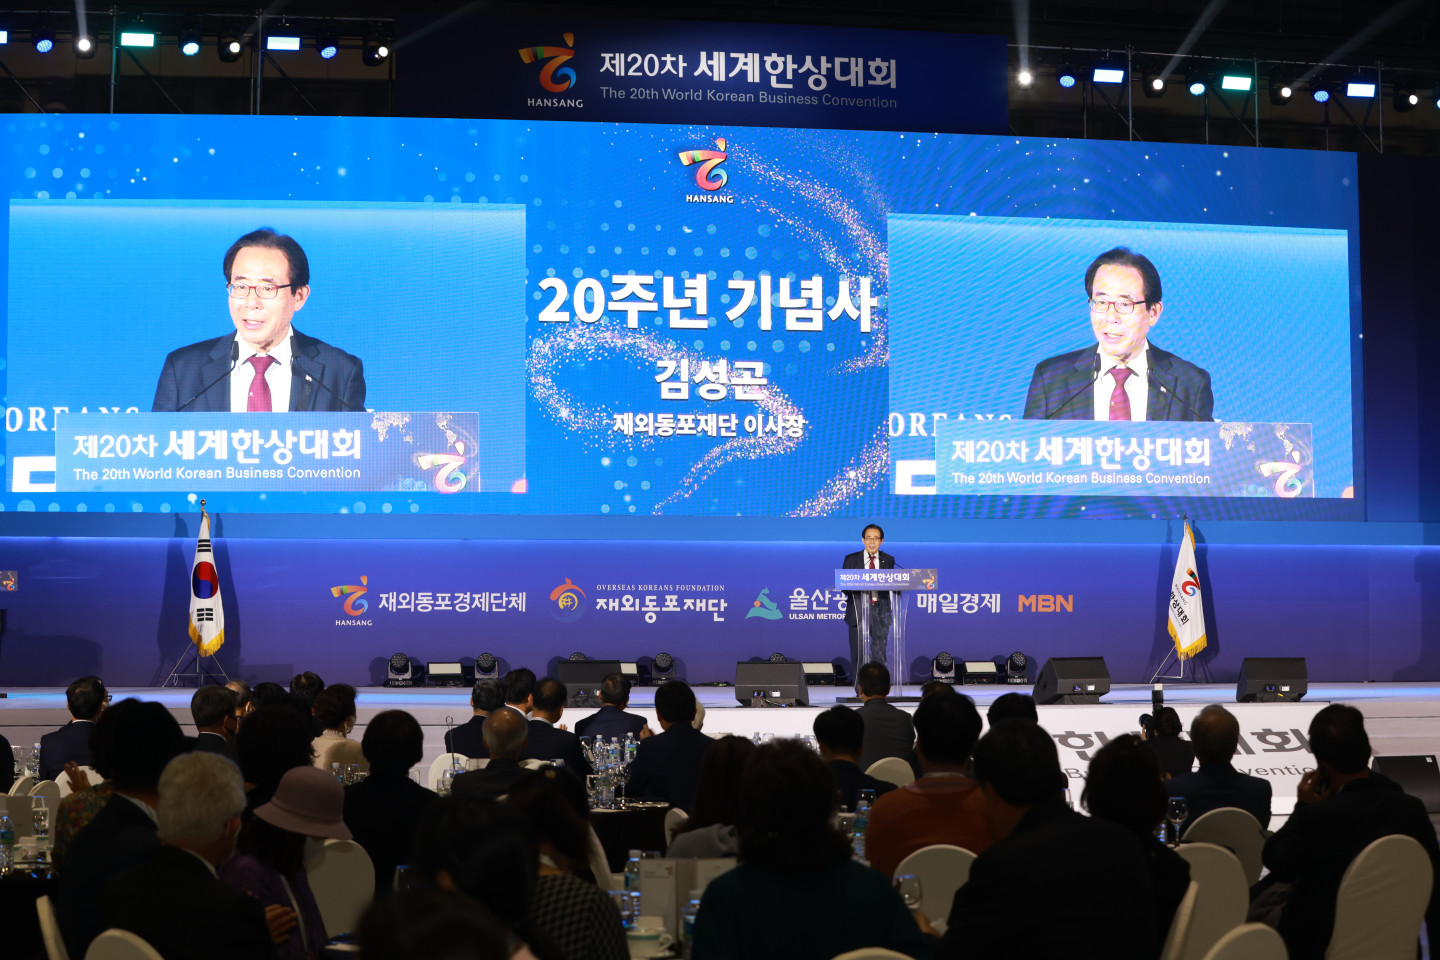 제20차 세계한상대회 20주년 기념 행사에서 기념사를 전하는 김성곤 이사장